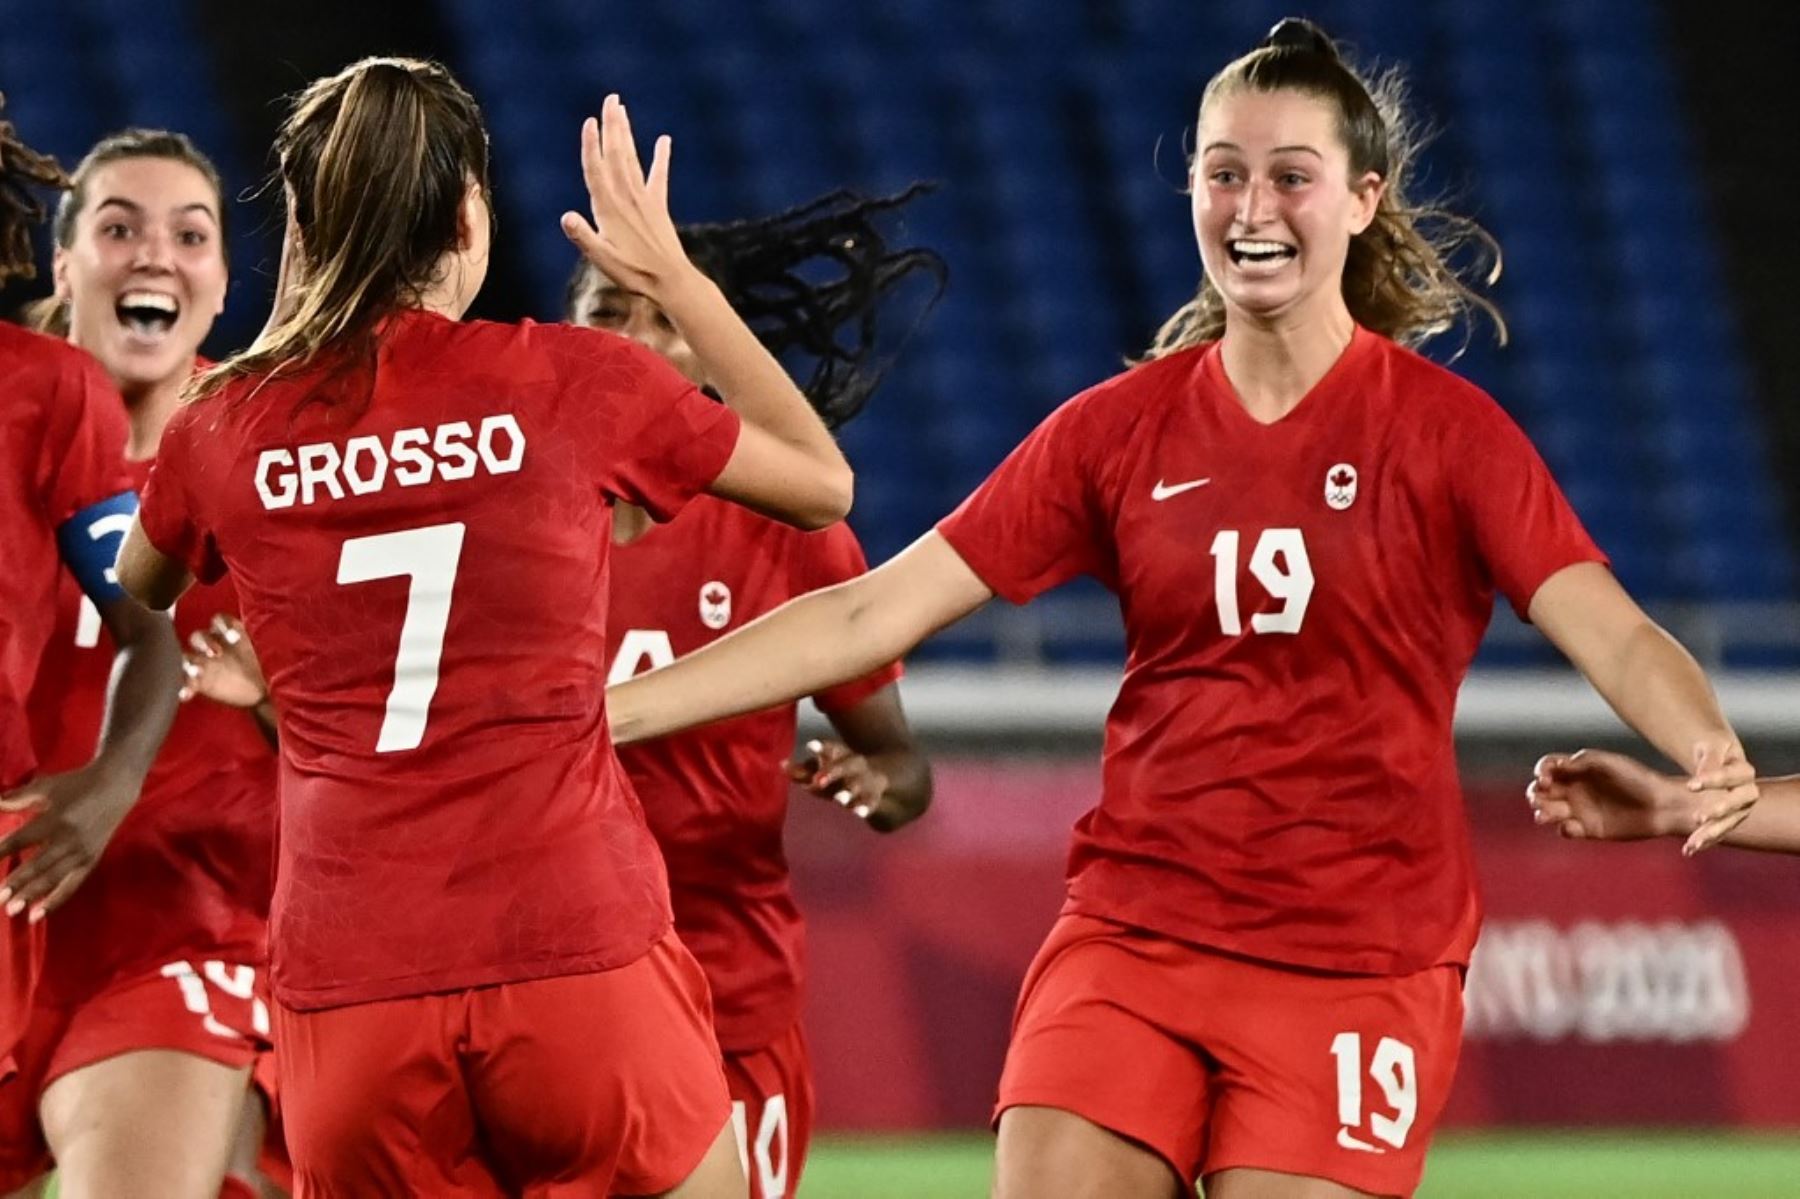 Canadá toca la cima en el fútbol femenino olímpico